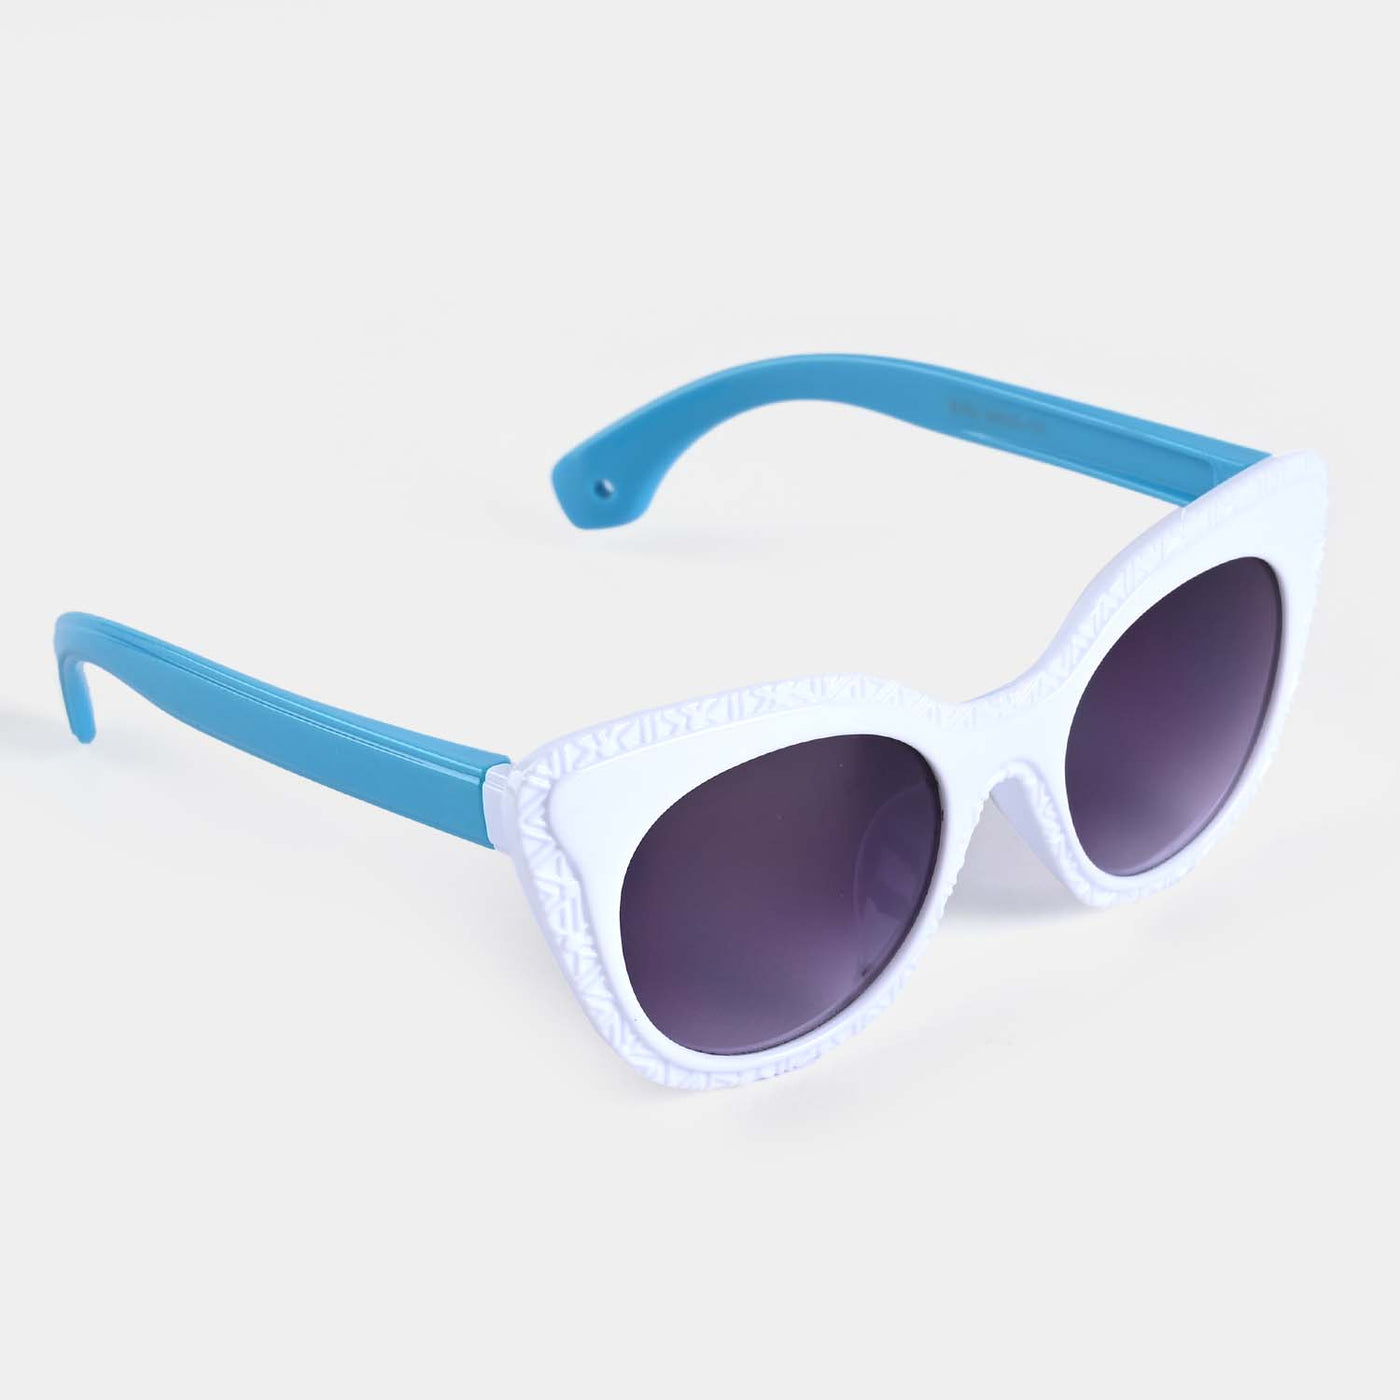 Kids Fancy Sunglasses